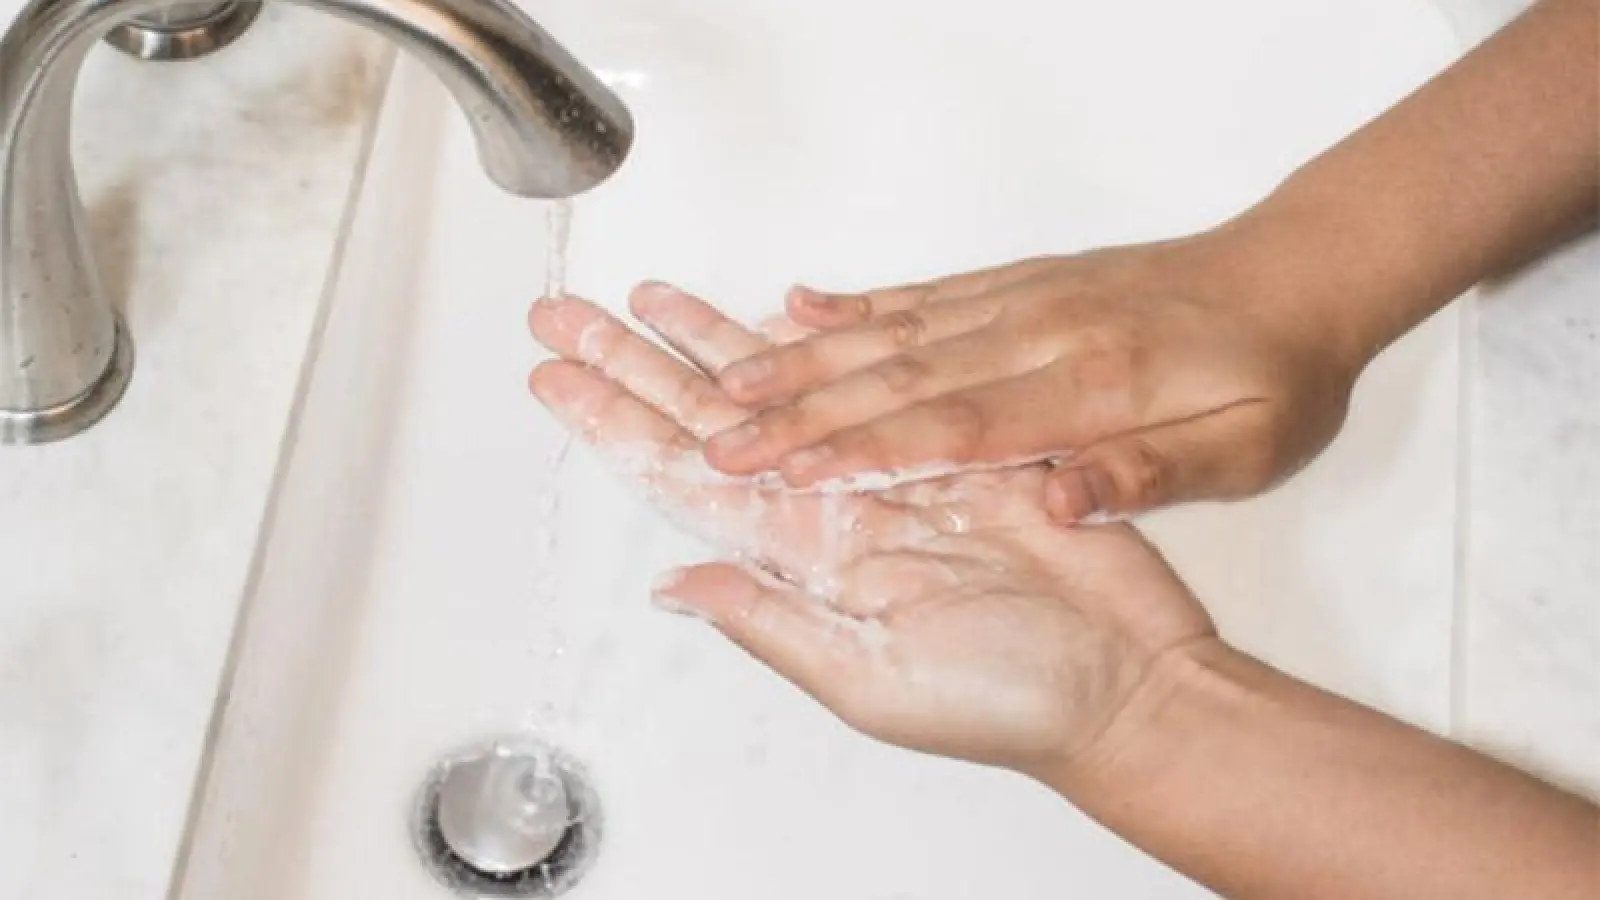 Jeder Dritte wäscht sich nicht regelmäßig die Hände (Foto: red)